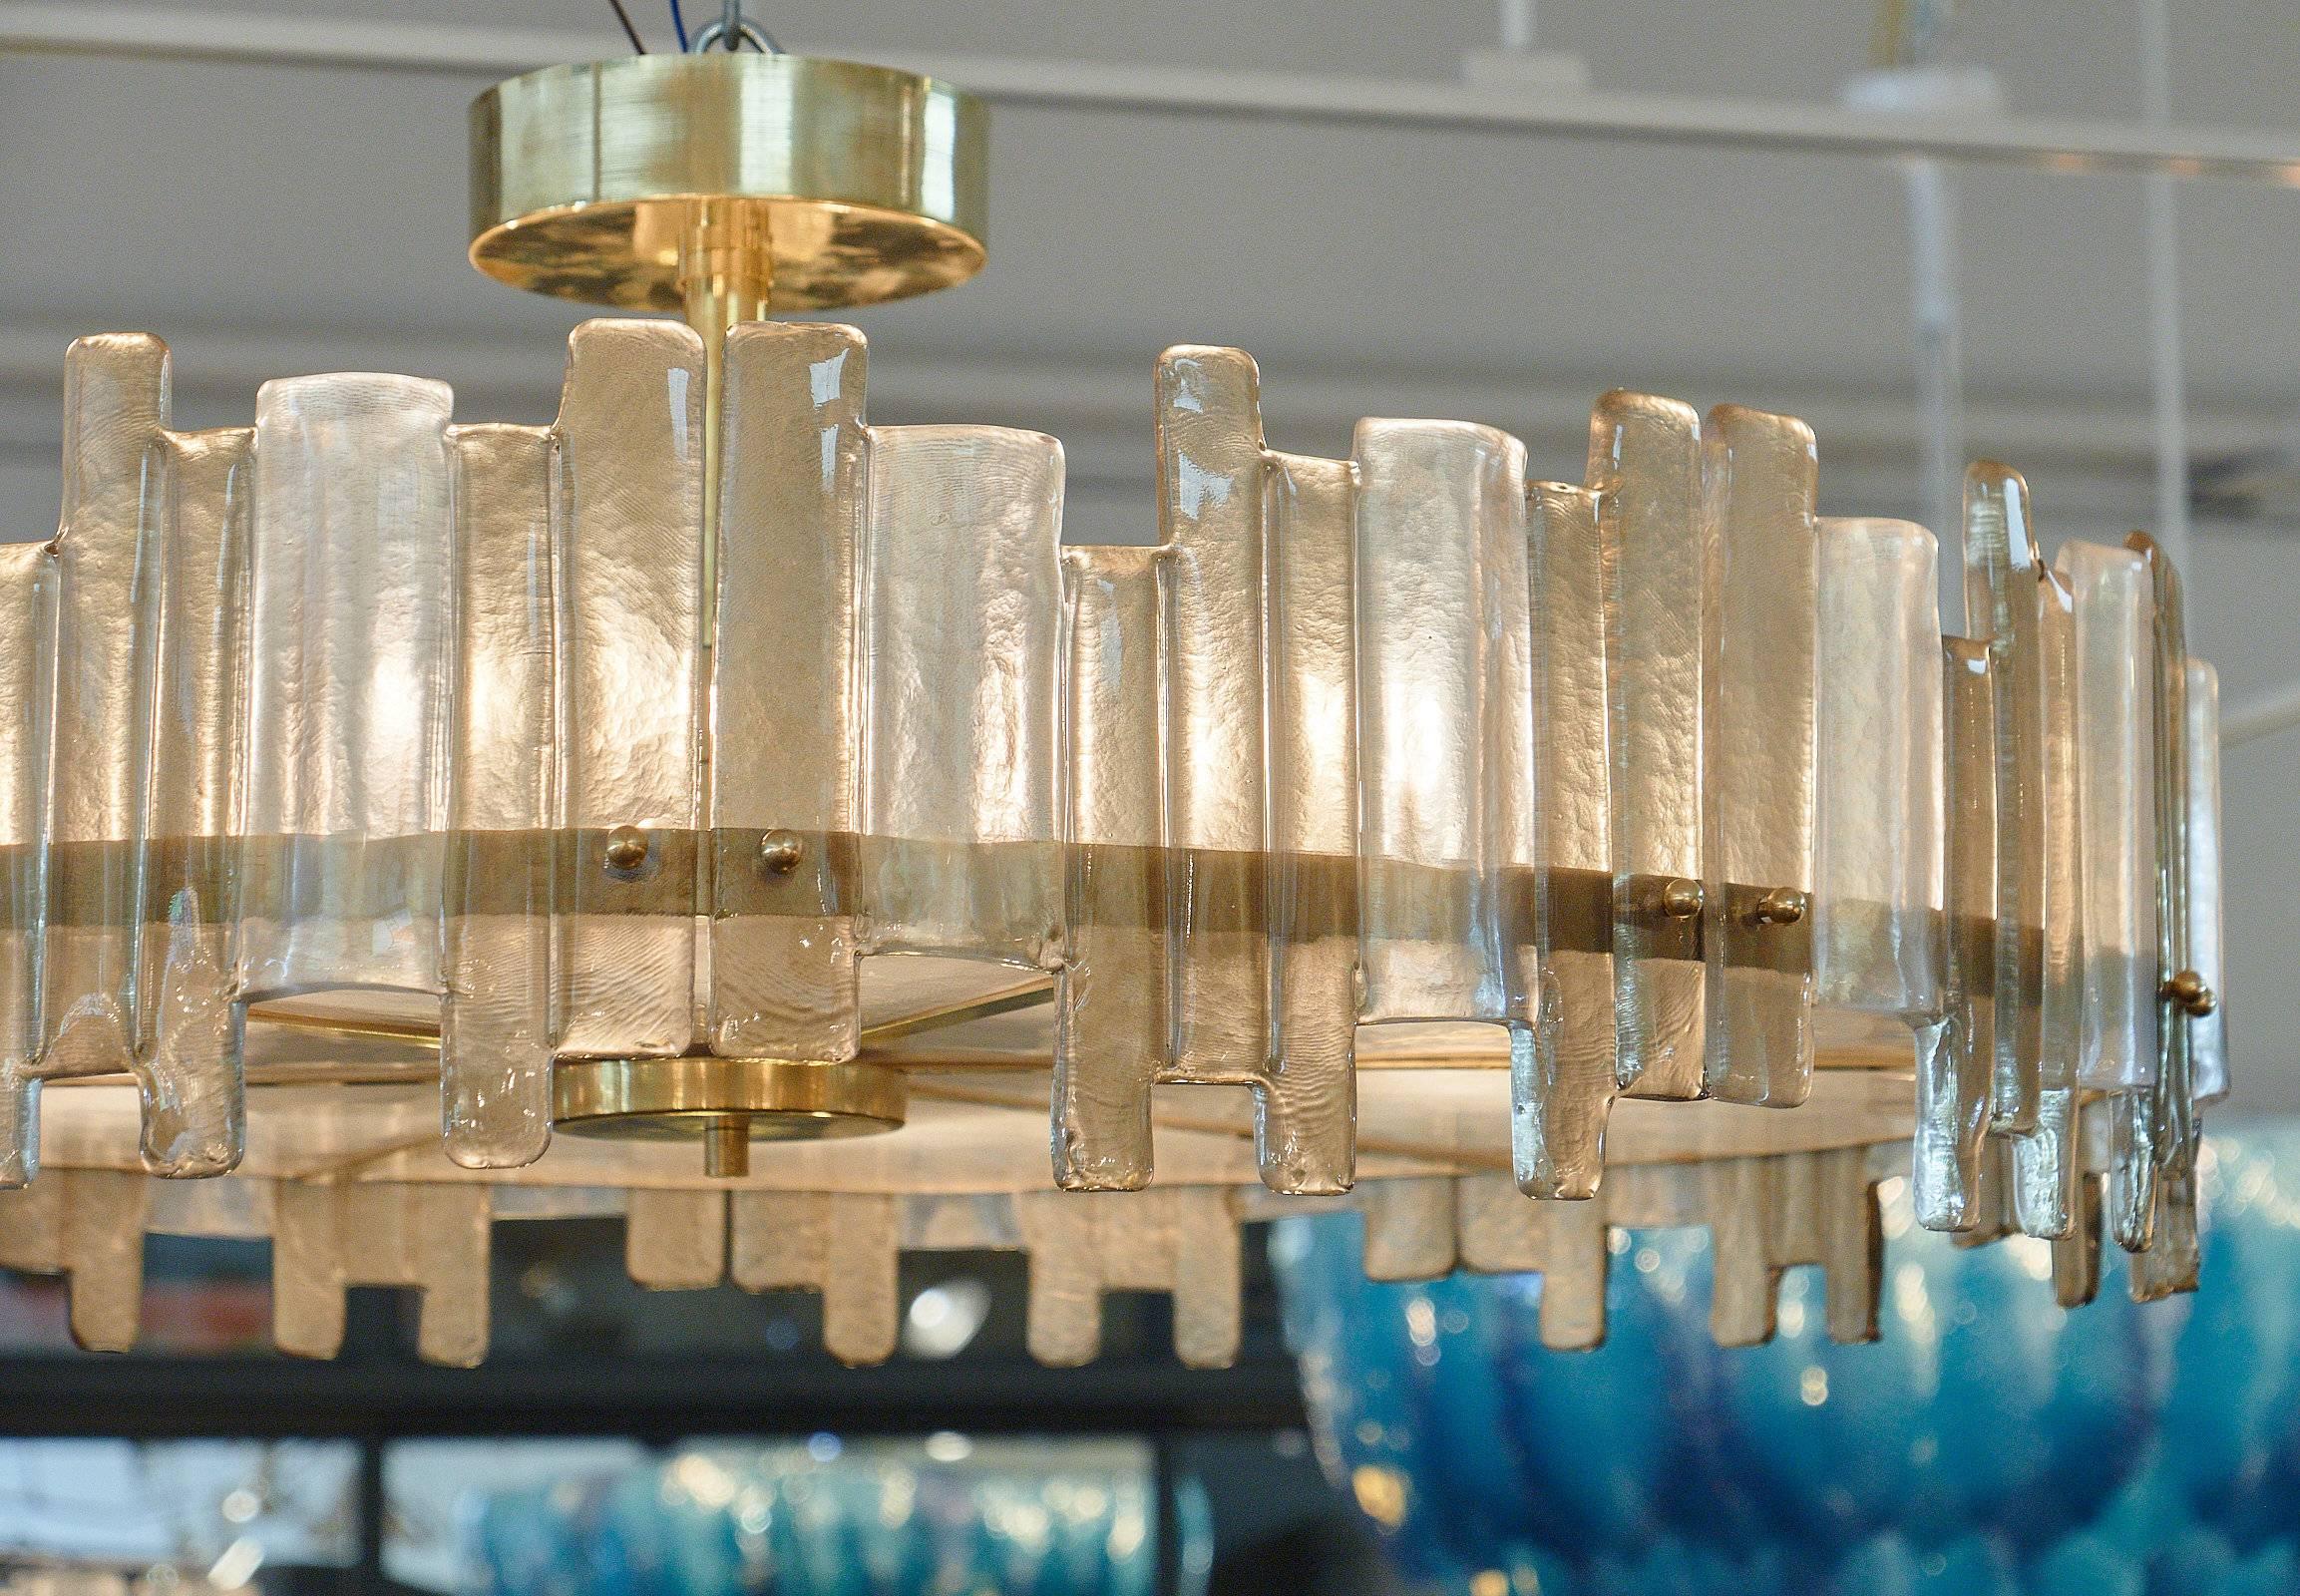 Spektakulärer Mazzega-Kronleuchter aus Muranoglas in runder Form. Diese Leuchte, die Mazzega zugeschrieben wird, hat organisch geformte, dicke Glaslamellen, die sich in Rauch- und Klarglasfarben um eine massive Messingstruktur abwechseln. Das